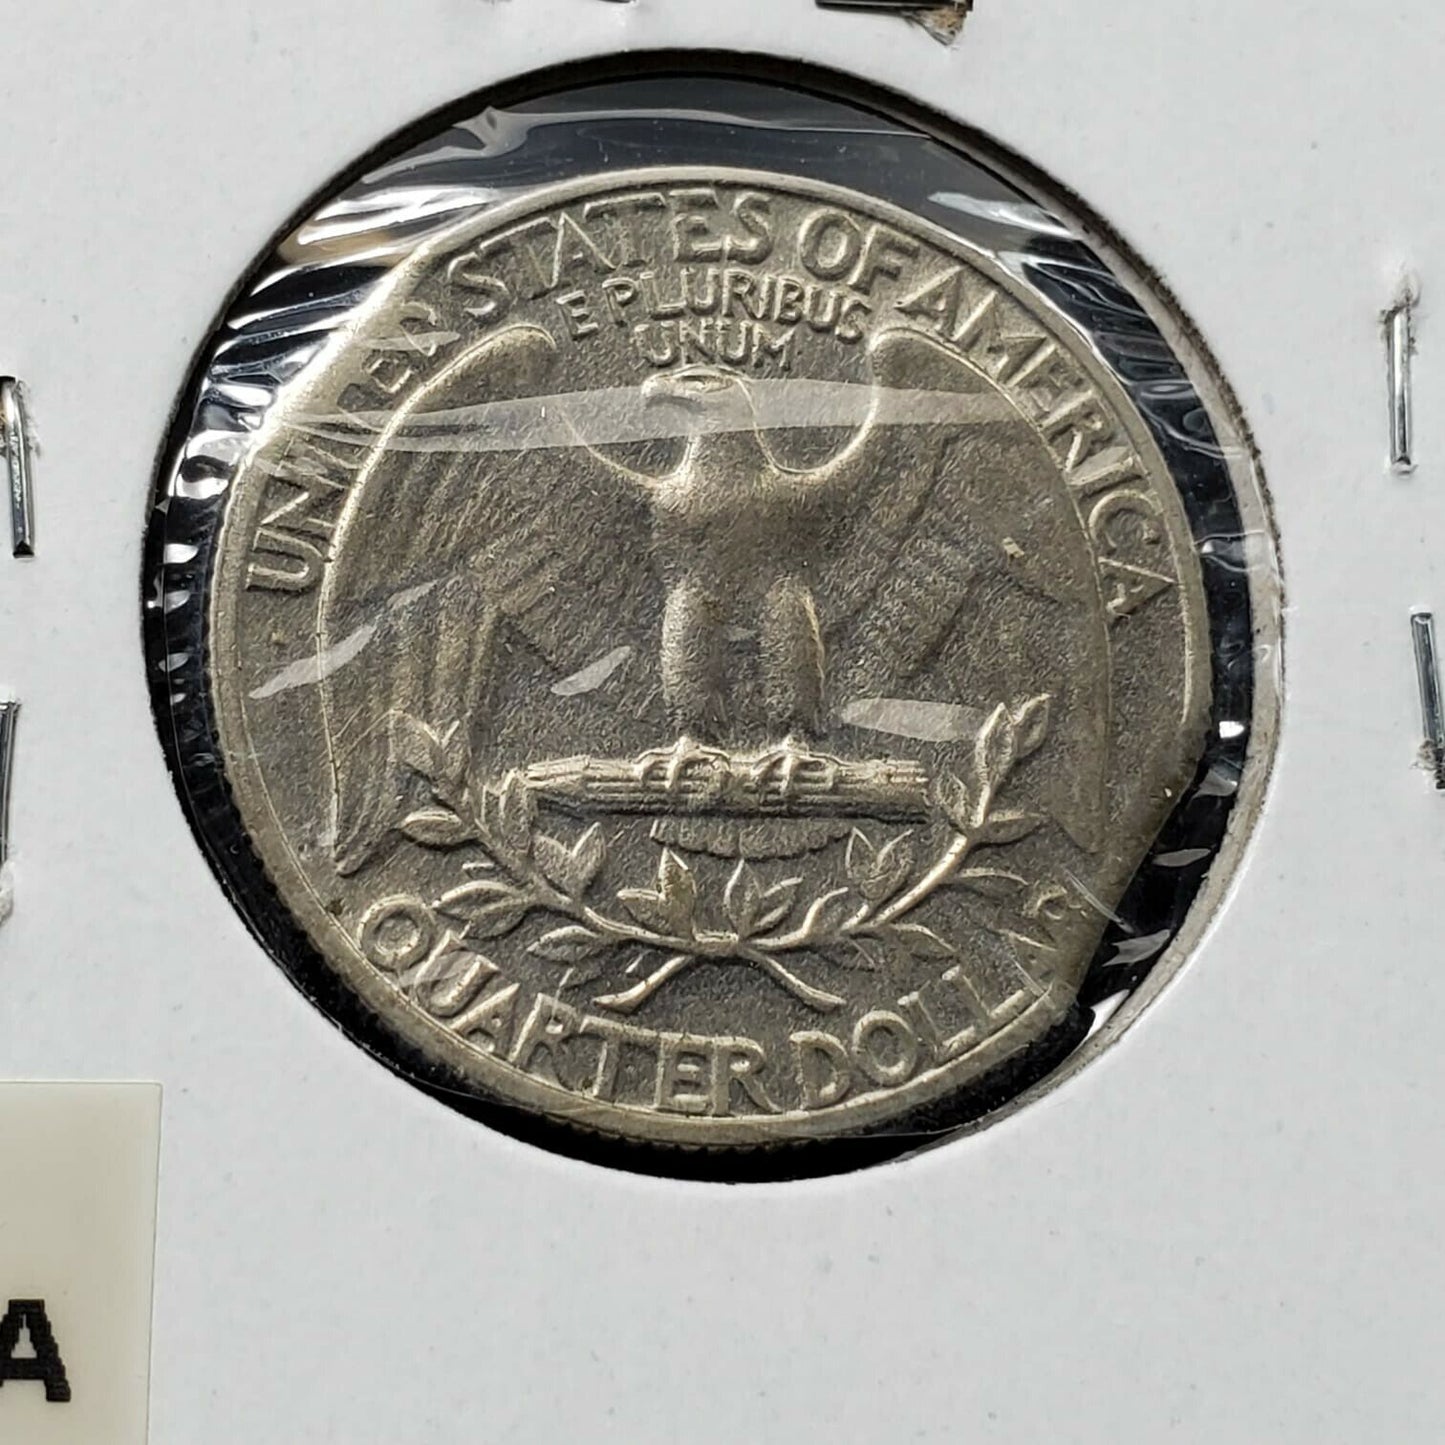 1968 Washington Clad Quarter Coin AU / UNC DOUBLE TWICE CLIPPED PLANCHET